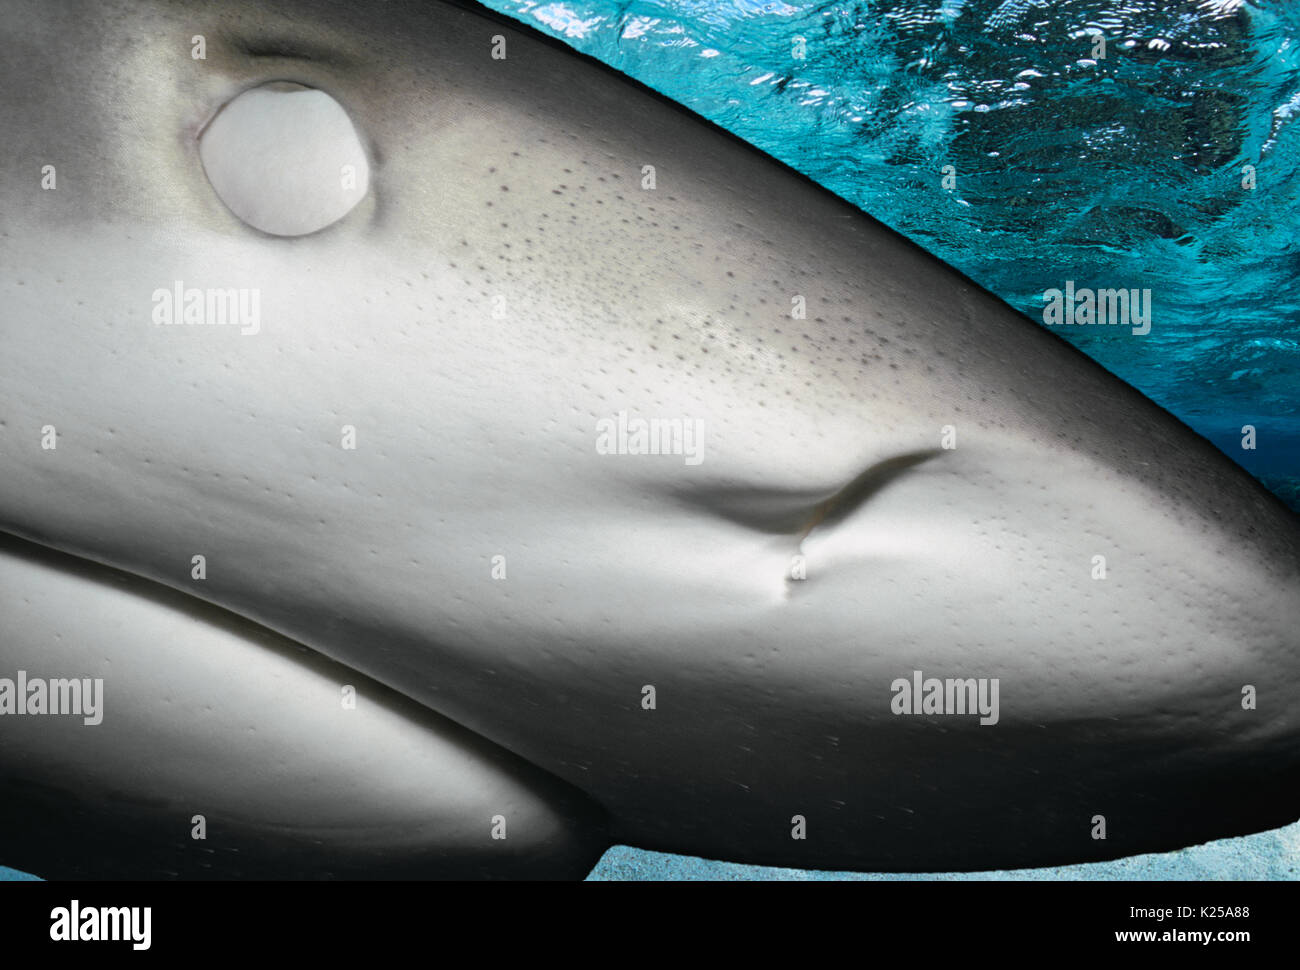 Karibische Riffhai (Carcharhinus perezi), Freeport, Bahamas - Karibik. Dieses Bild wurde digital nachbearbeitet, abgelenkt oder m zu entfernen Stockfoto